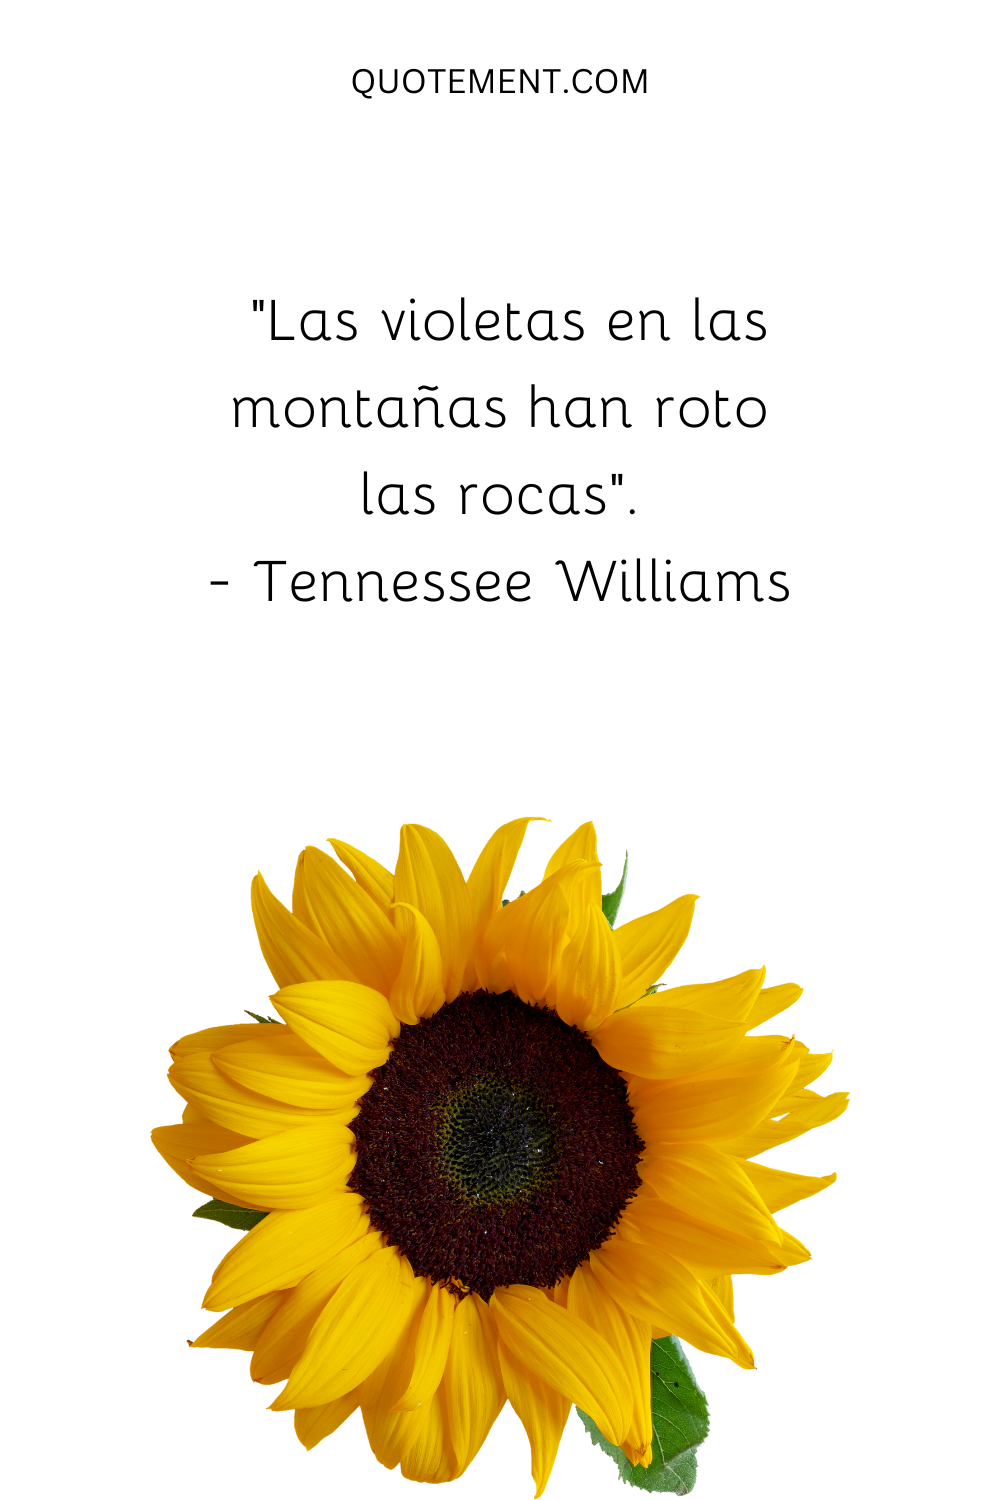 "Las violetas de las montañas han roto las rocas". - Tennessee Williams